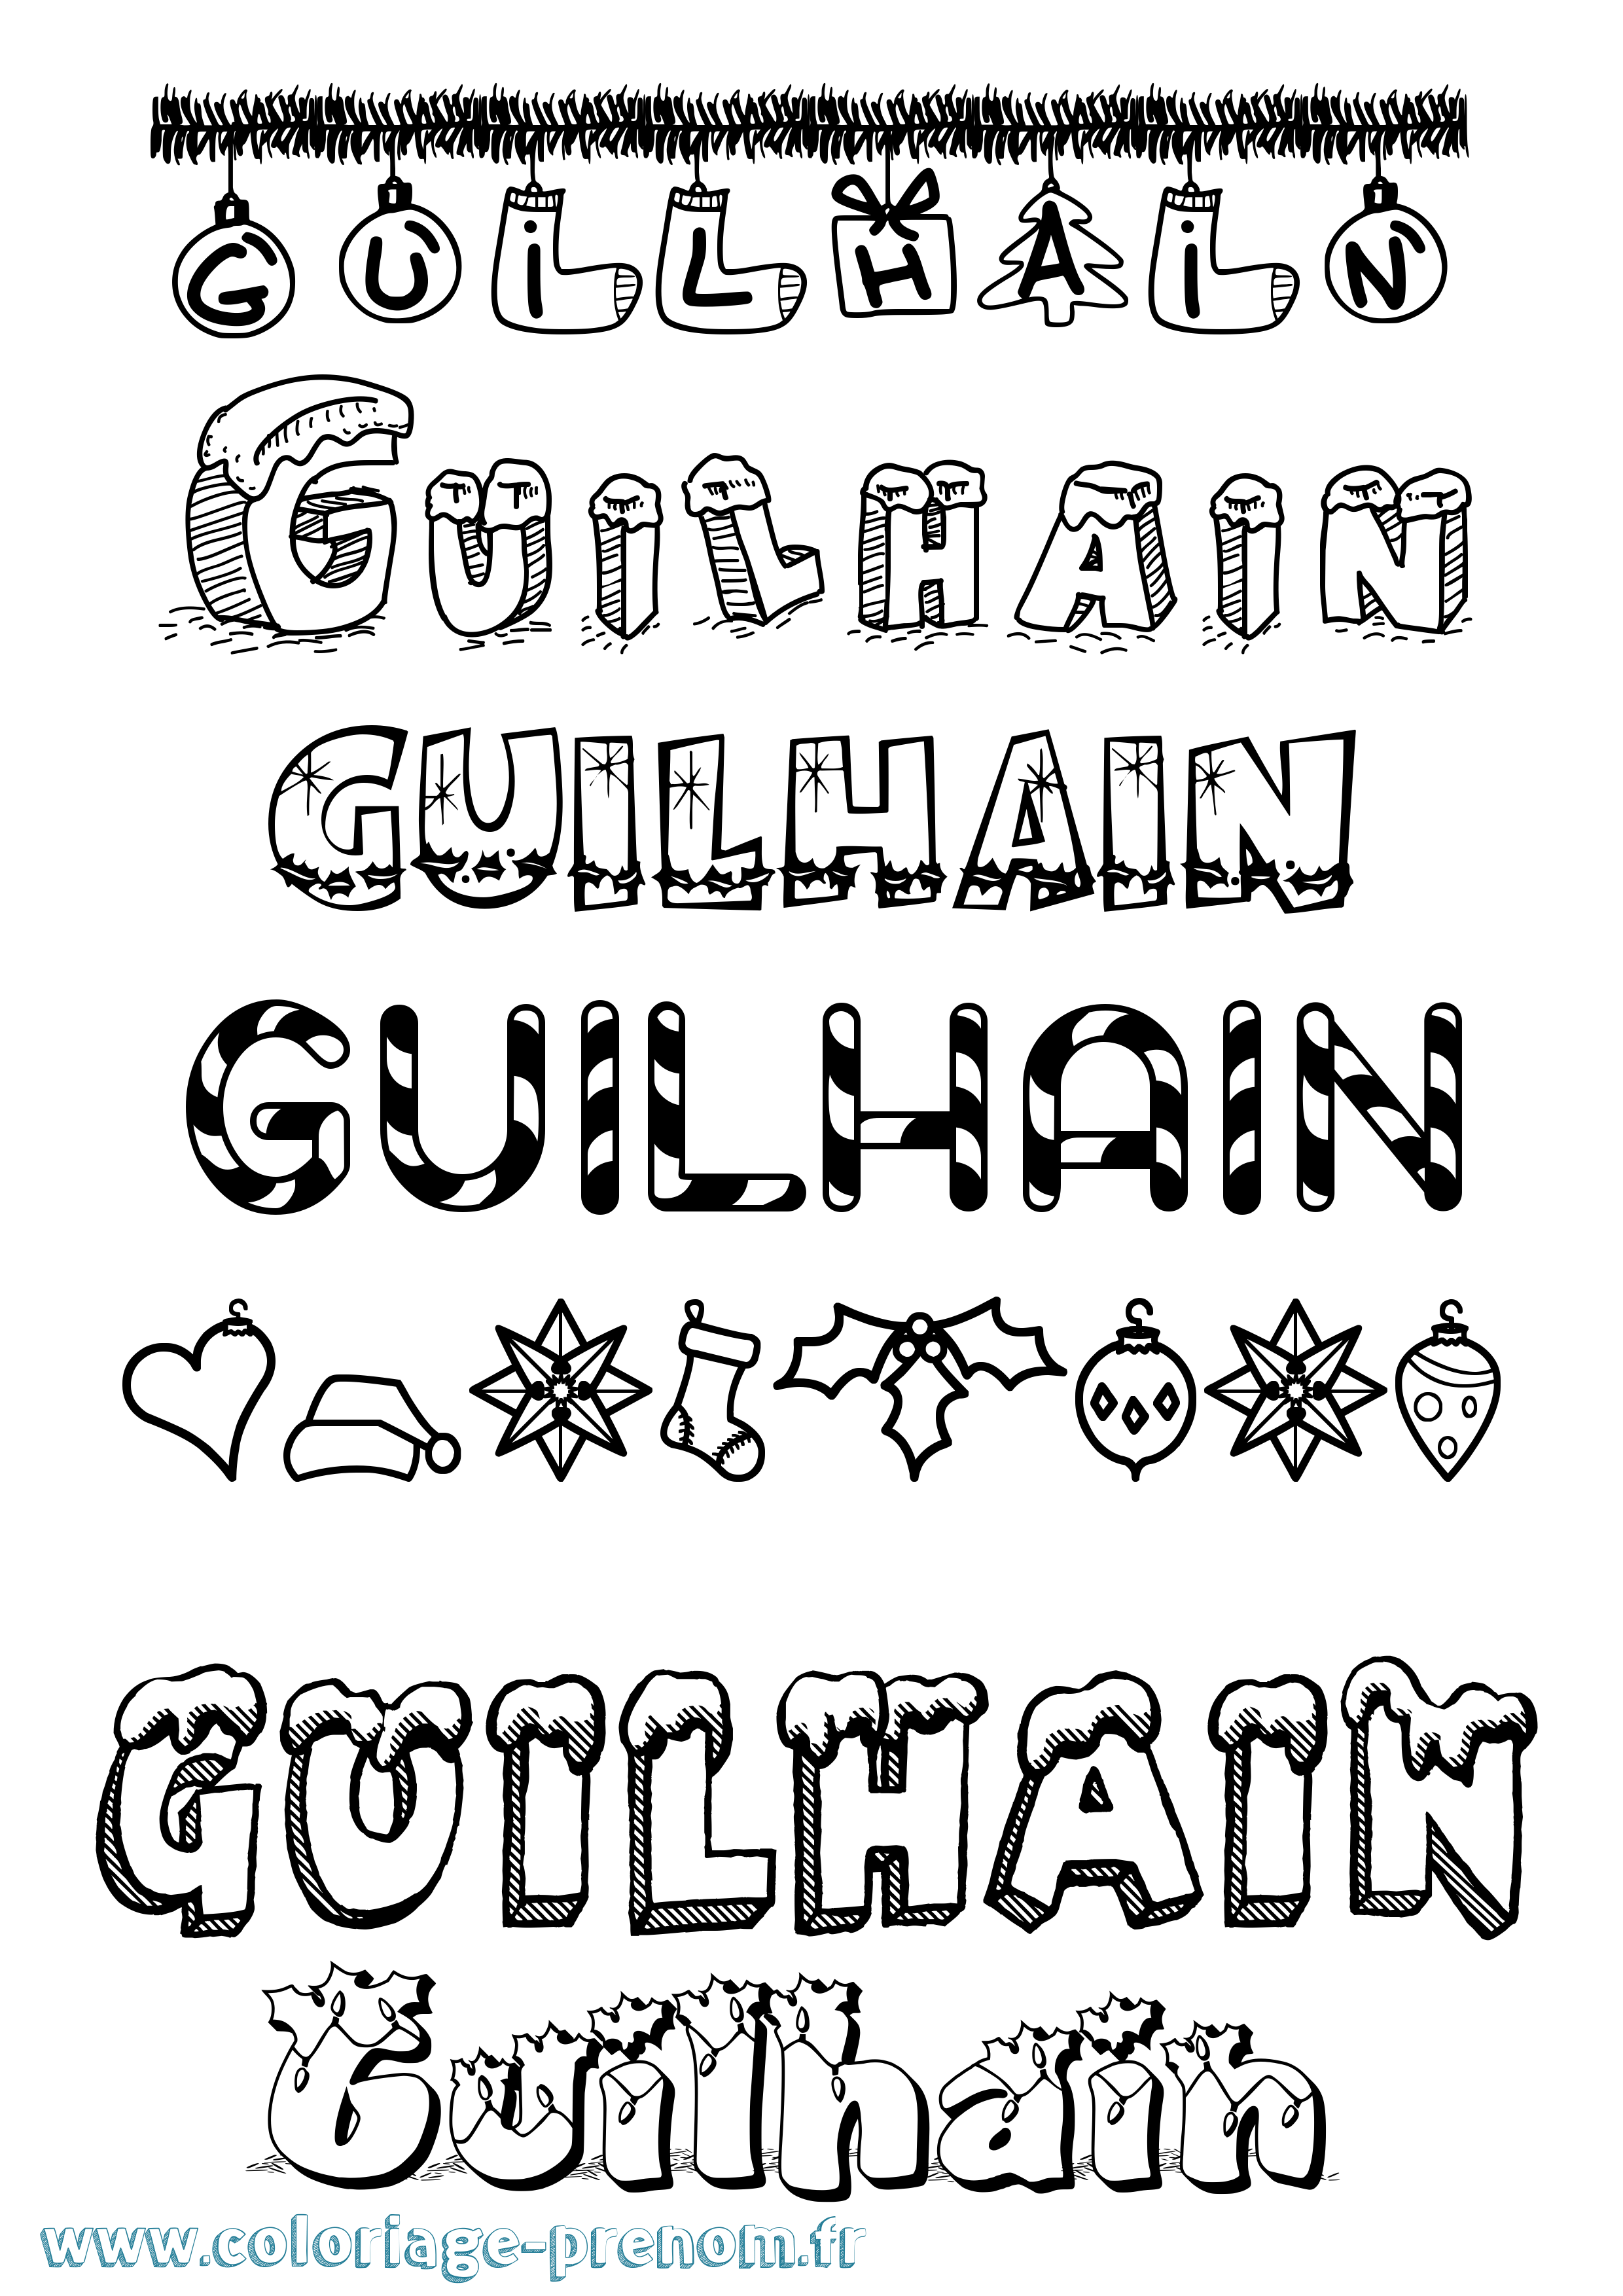 Coloriage prénom Guilhain Noël